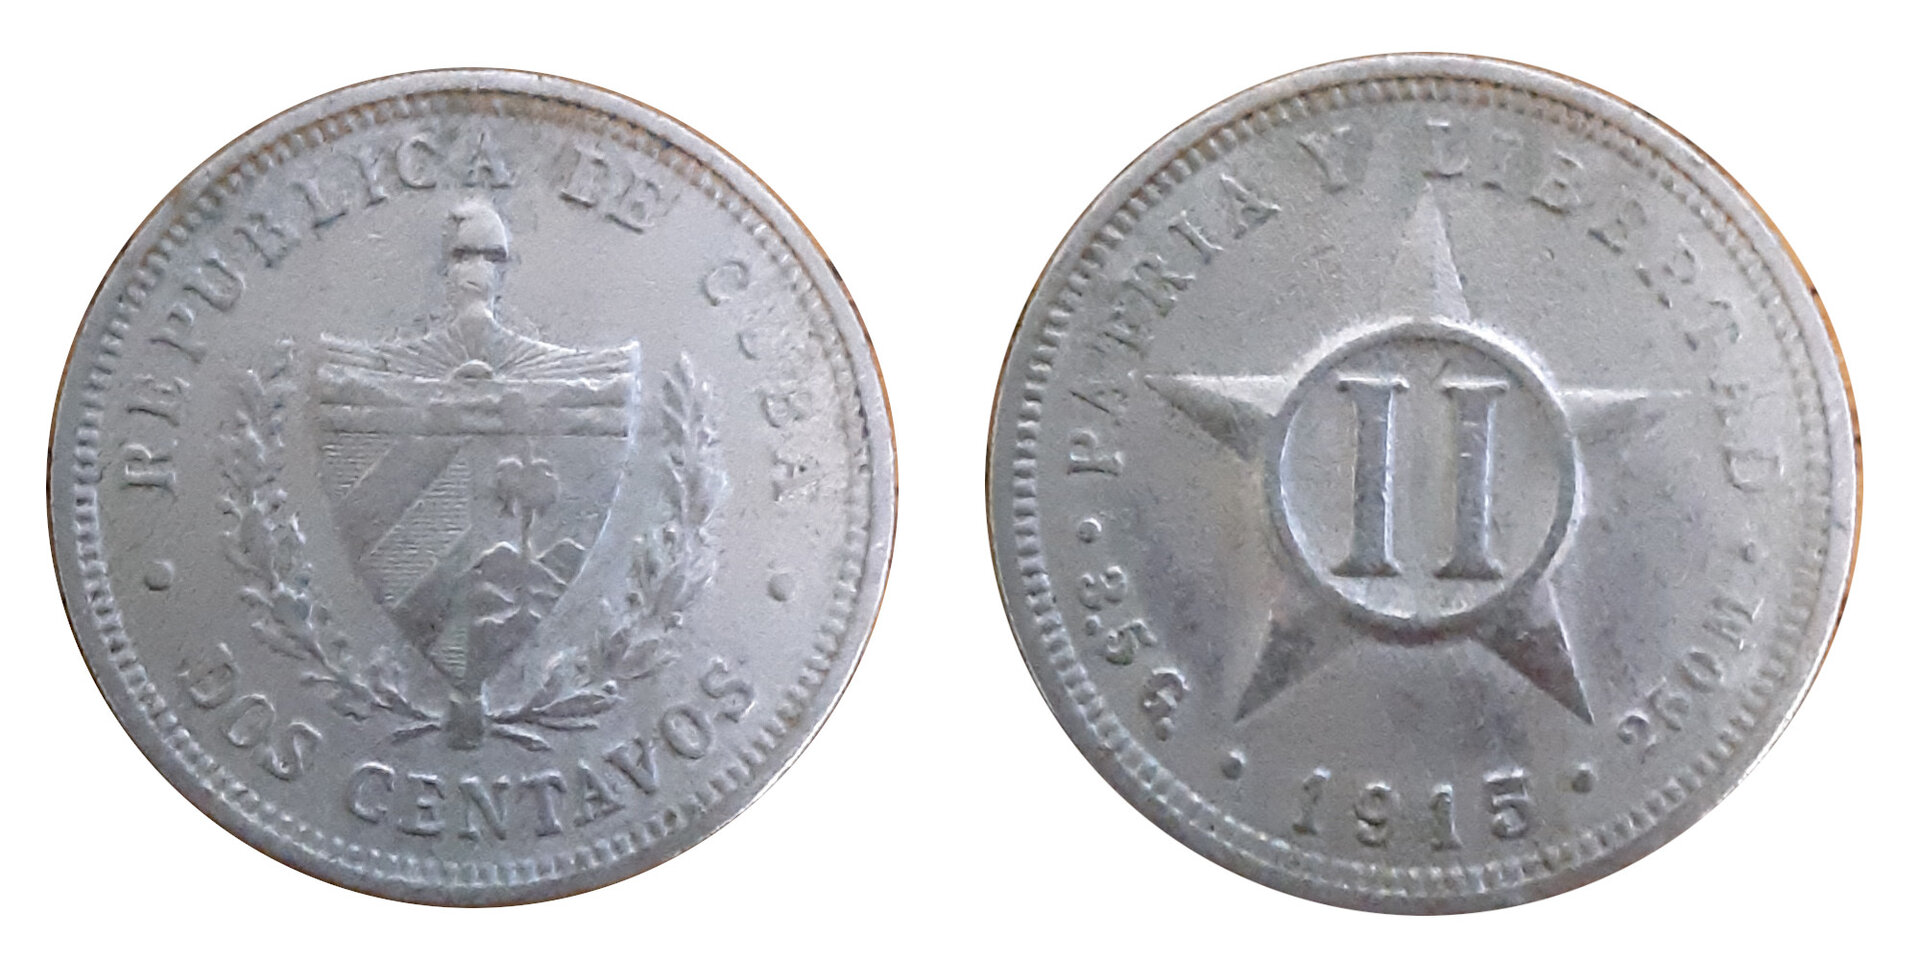 Cuba-2_centavos-1915.jpg